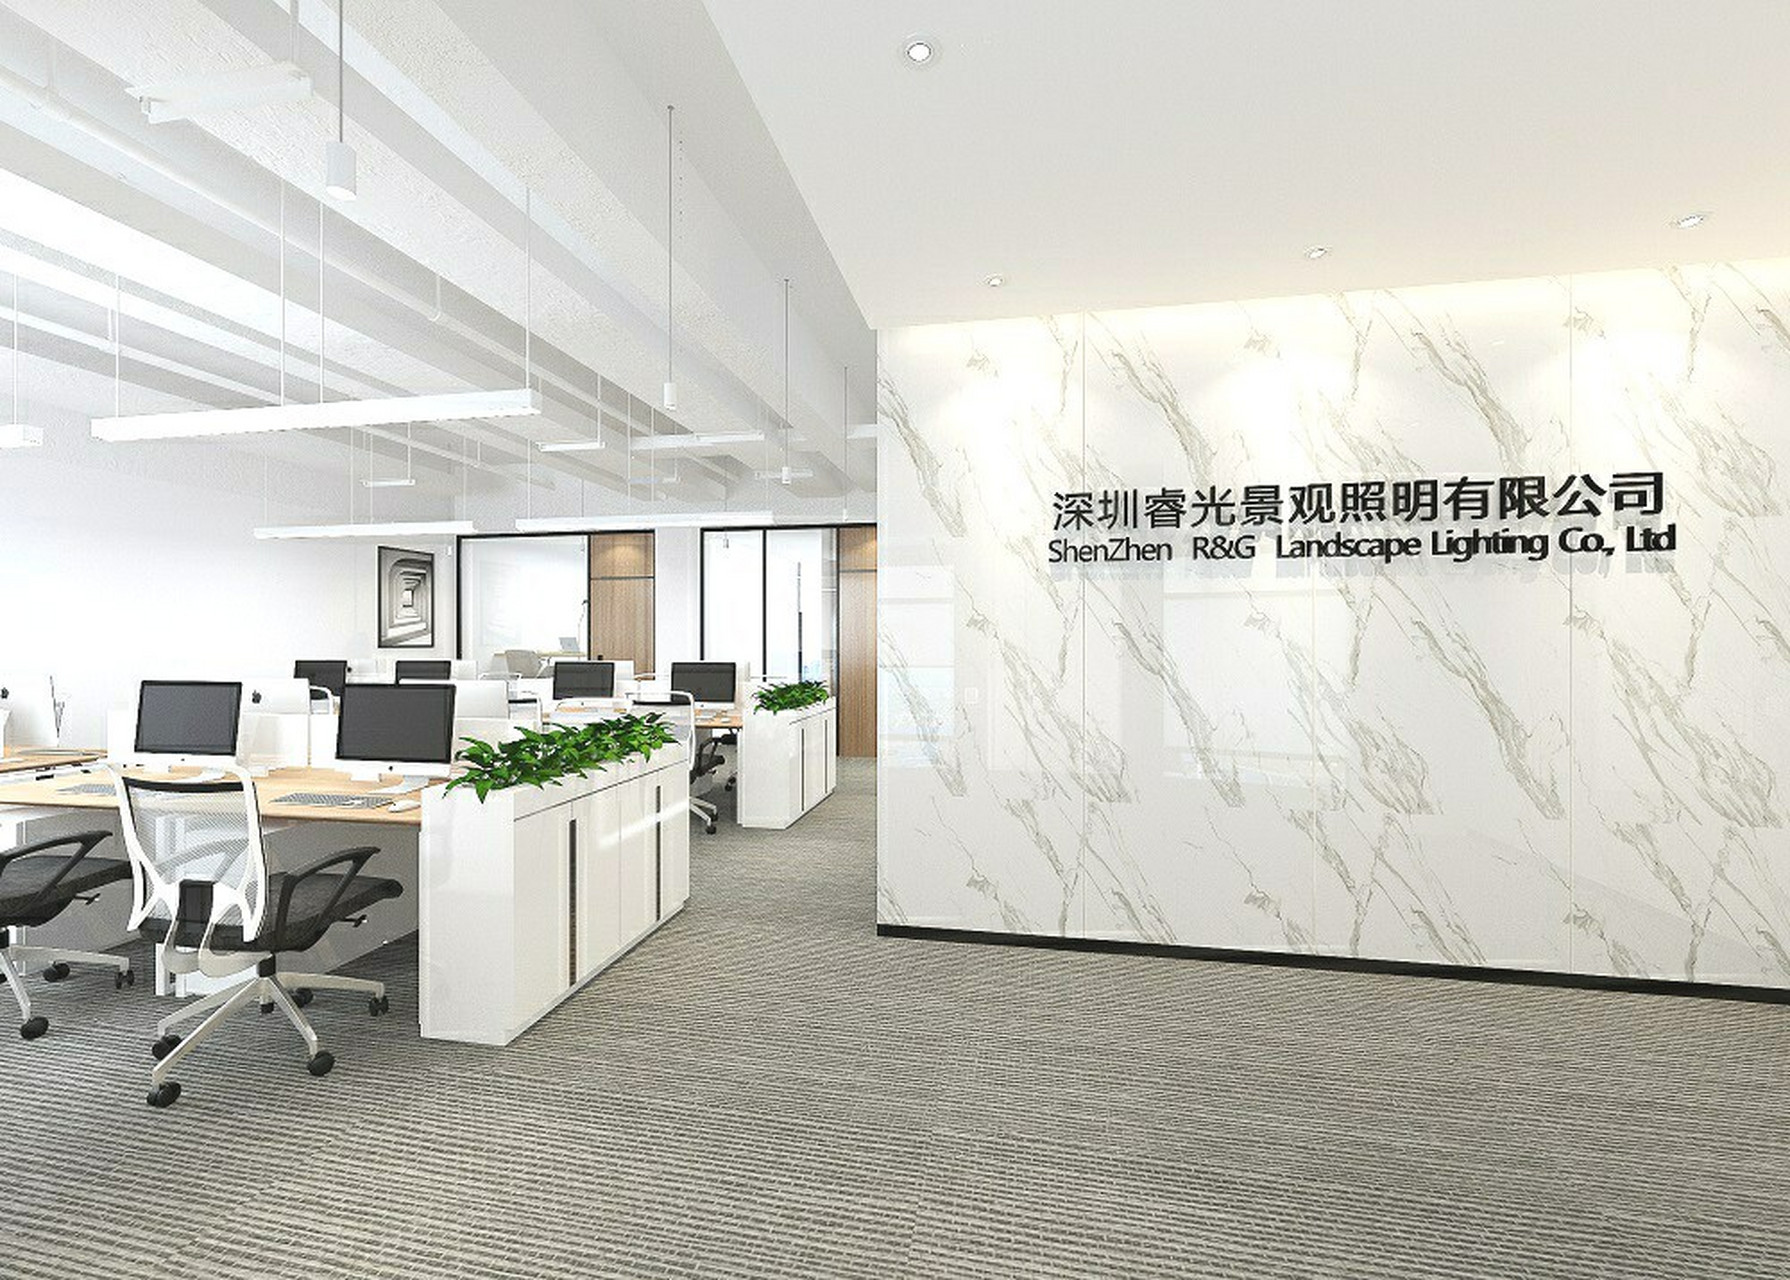 200平米办公室这样设计,干净省90又养眼 92本案为景观照明公司